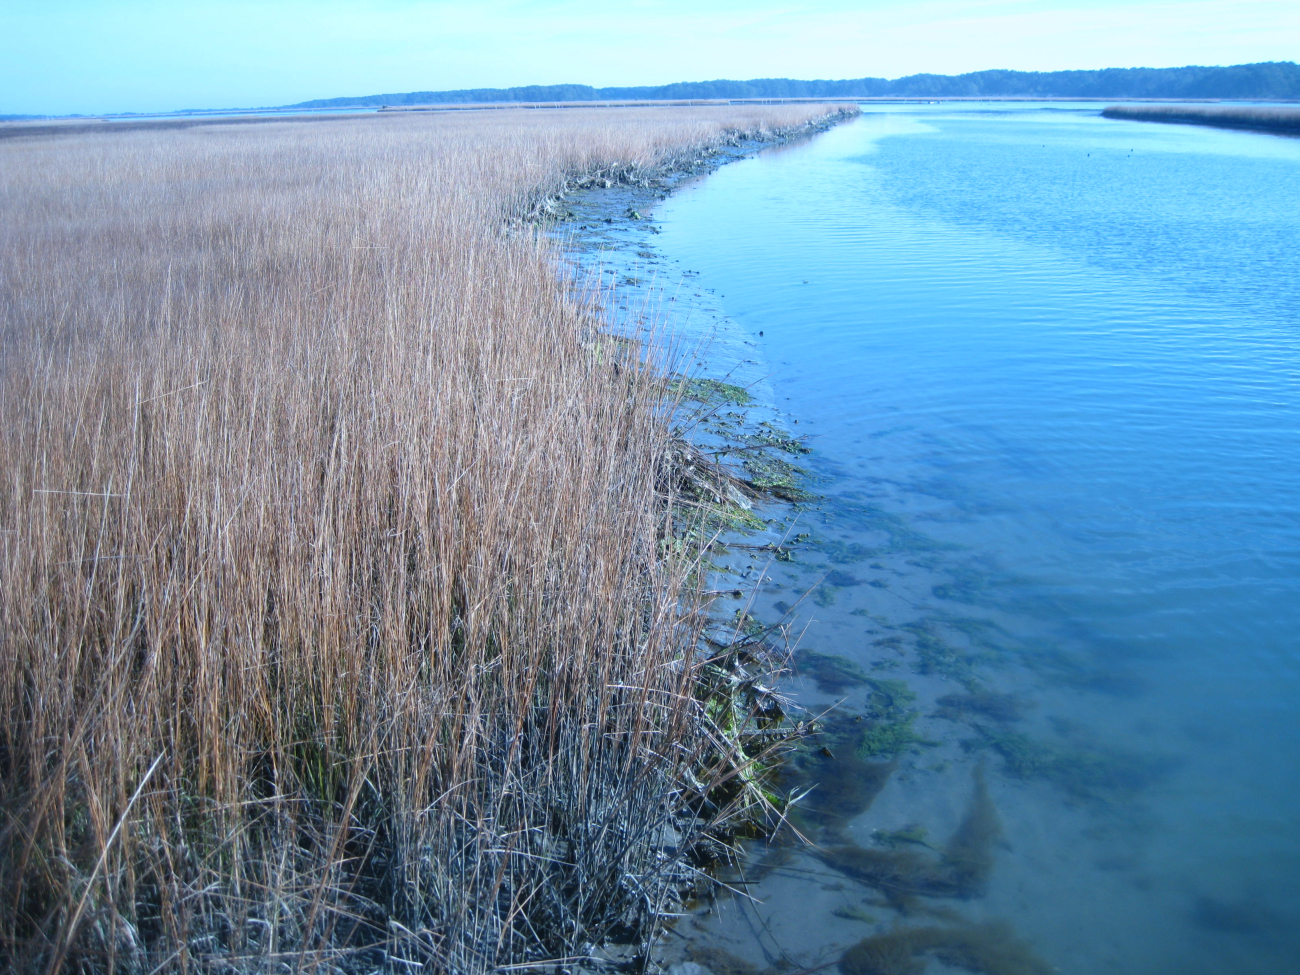 Chincoteague Bay wetlands at low tide